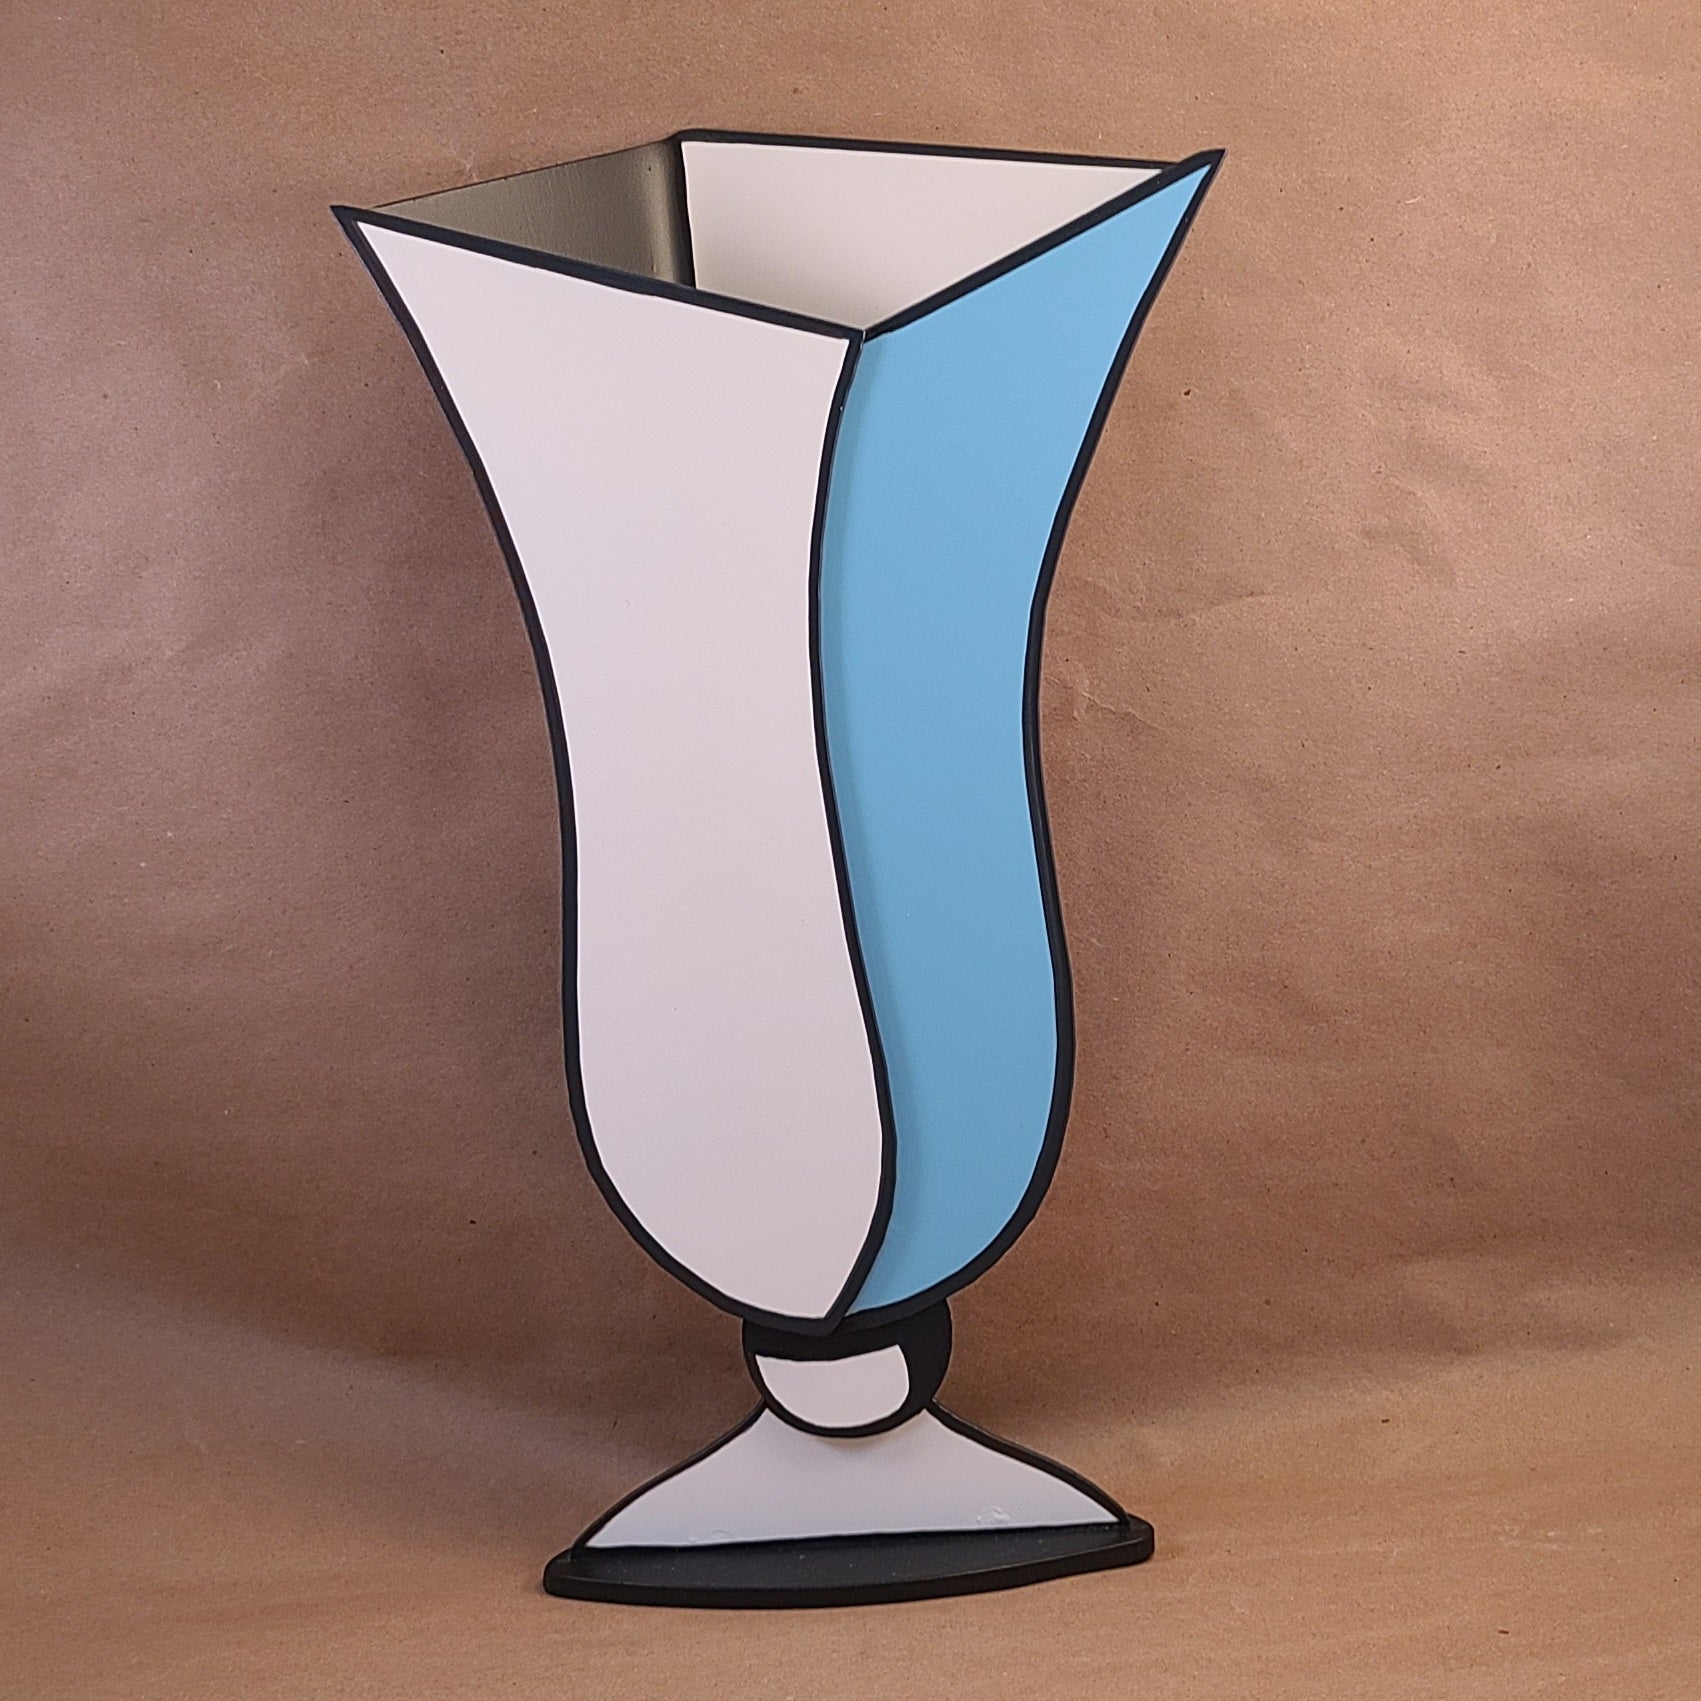 J.P. Roberts - Pop Art 2-D Vase Sculpture - 'Sasha' (Sky Blue)